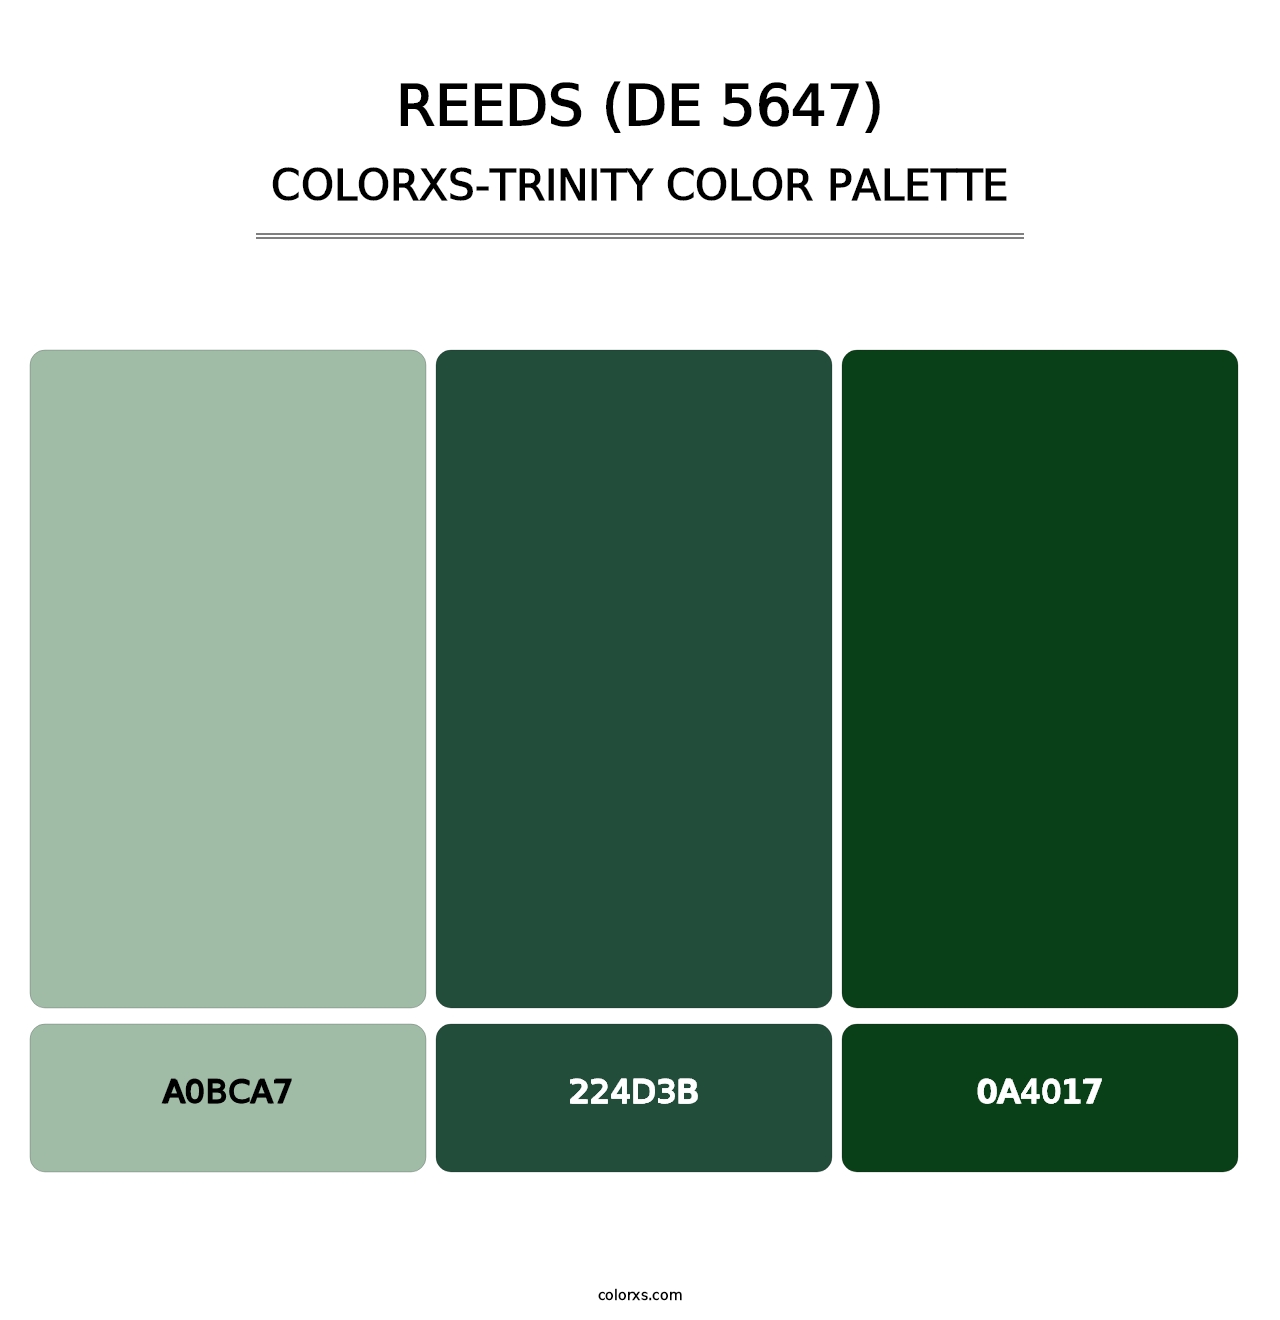 Reeds (DE 5647) - Colorxs Trinity Palette